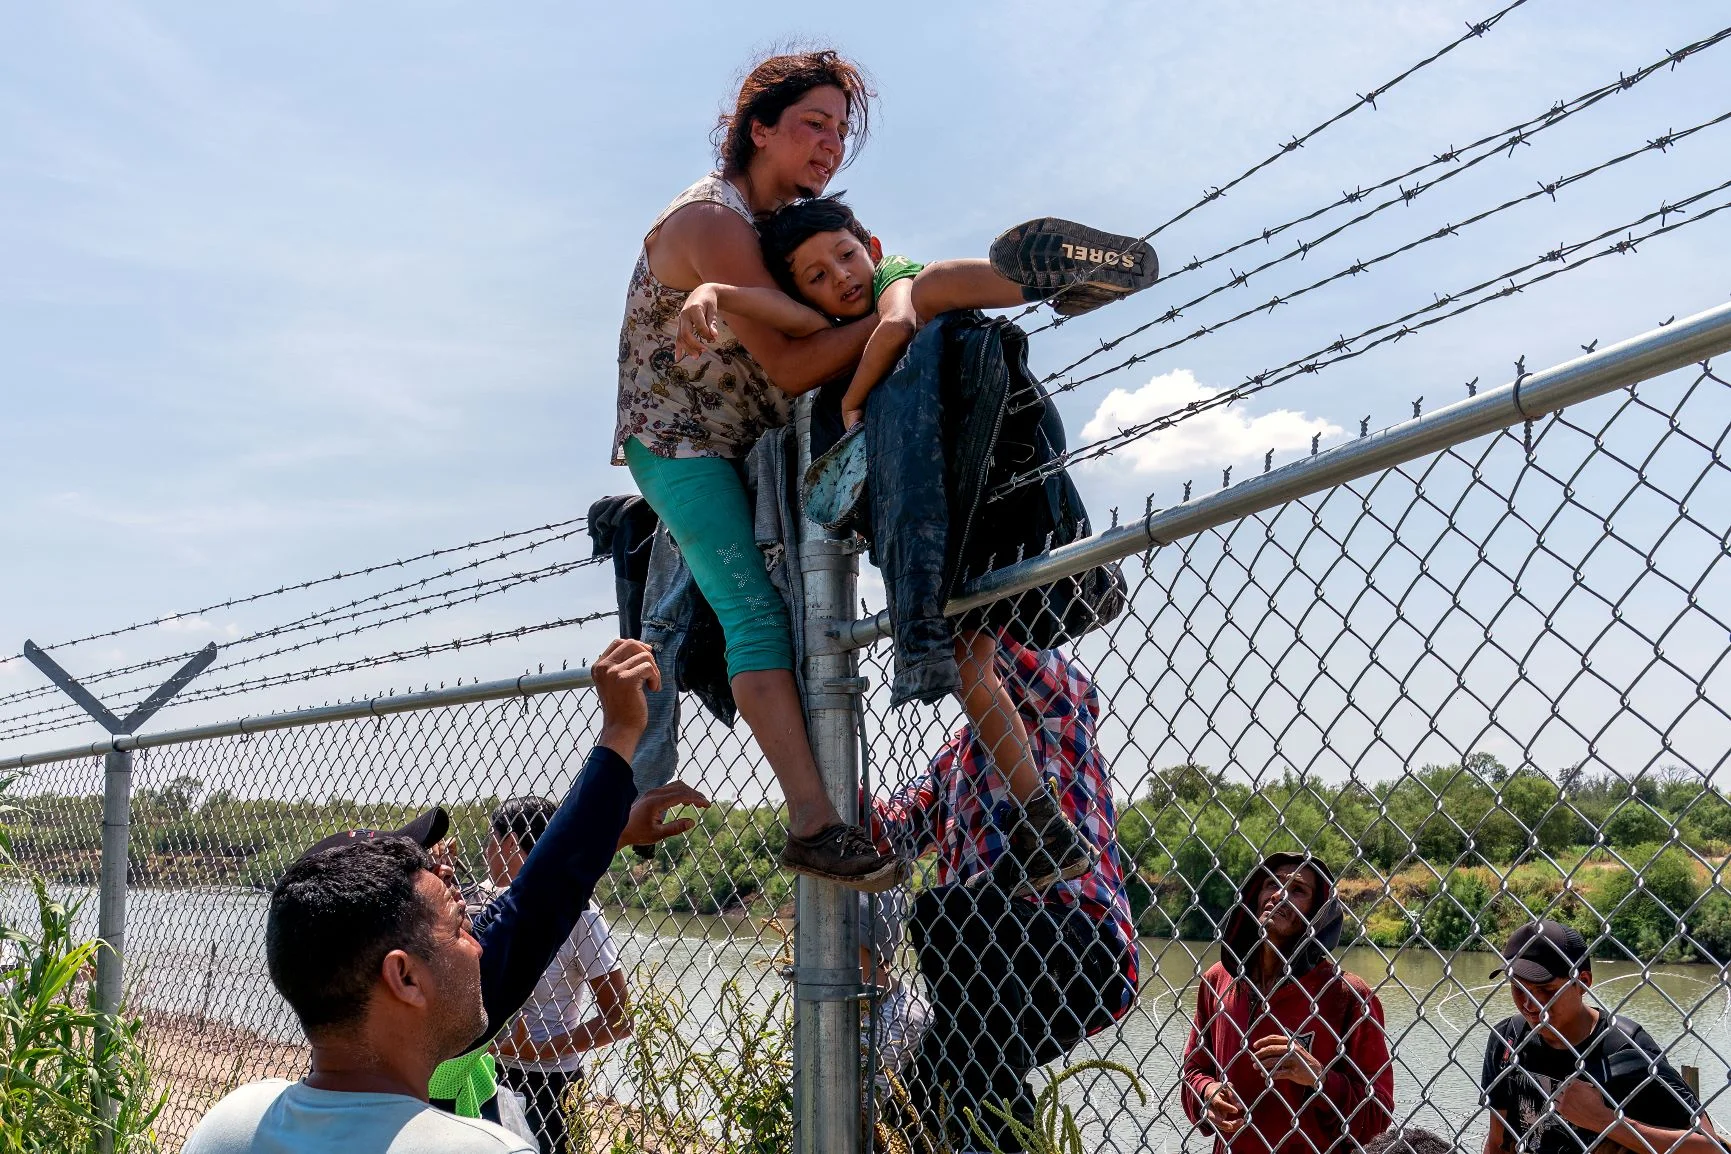 從墨西哥出發的移民者爬過鐵絲網圍欄， 越過格蘭河（Rio Grande）抵達美國。照片攝於八月。（SUZANNE CORDEIRO / AFP）